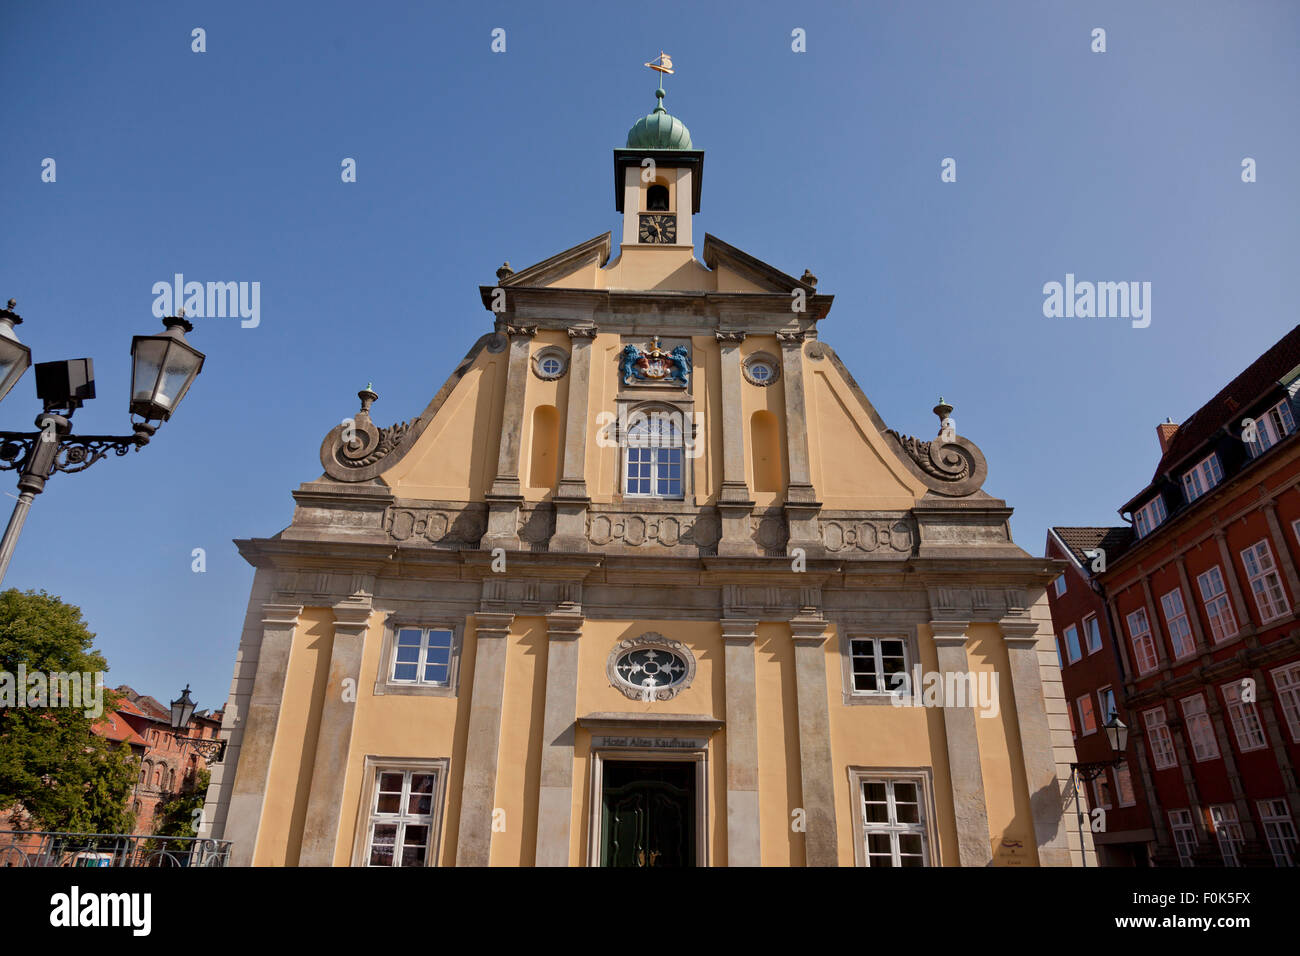 Facciata barocca dell'Alte Kaufhaus, cittadina anseatica di Lüneburg, Bassa Sassonia, Germania Foto Stock